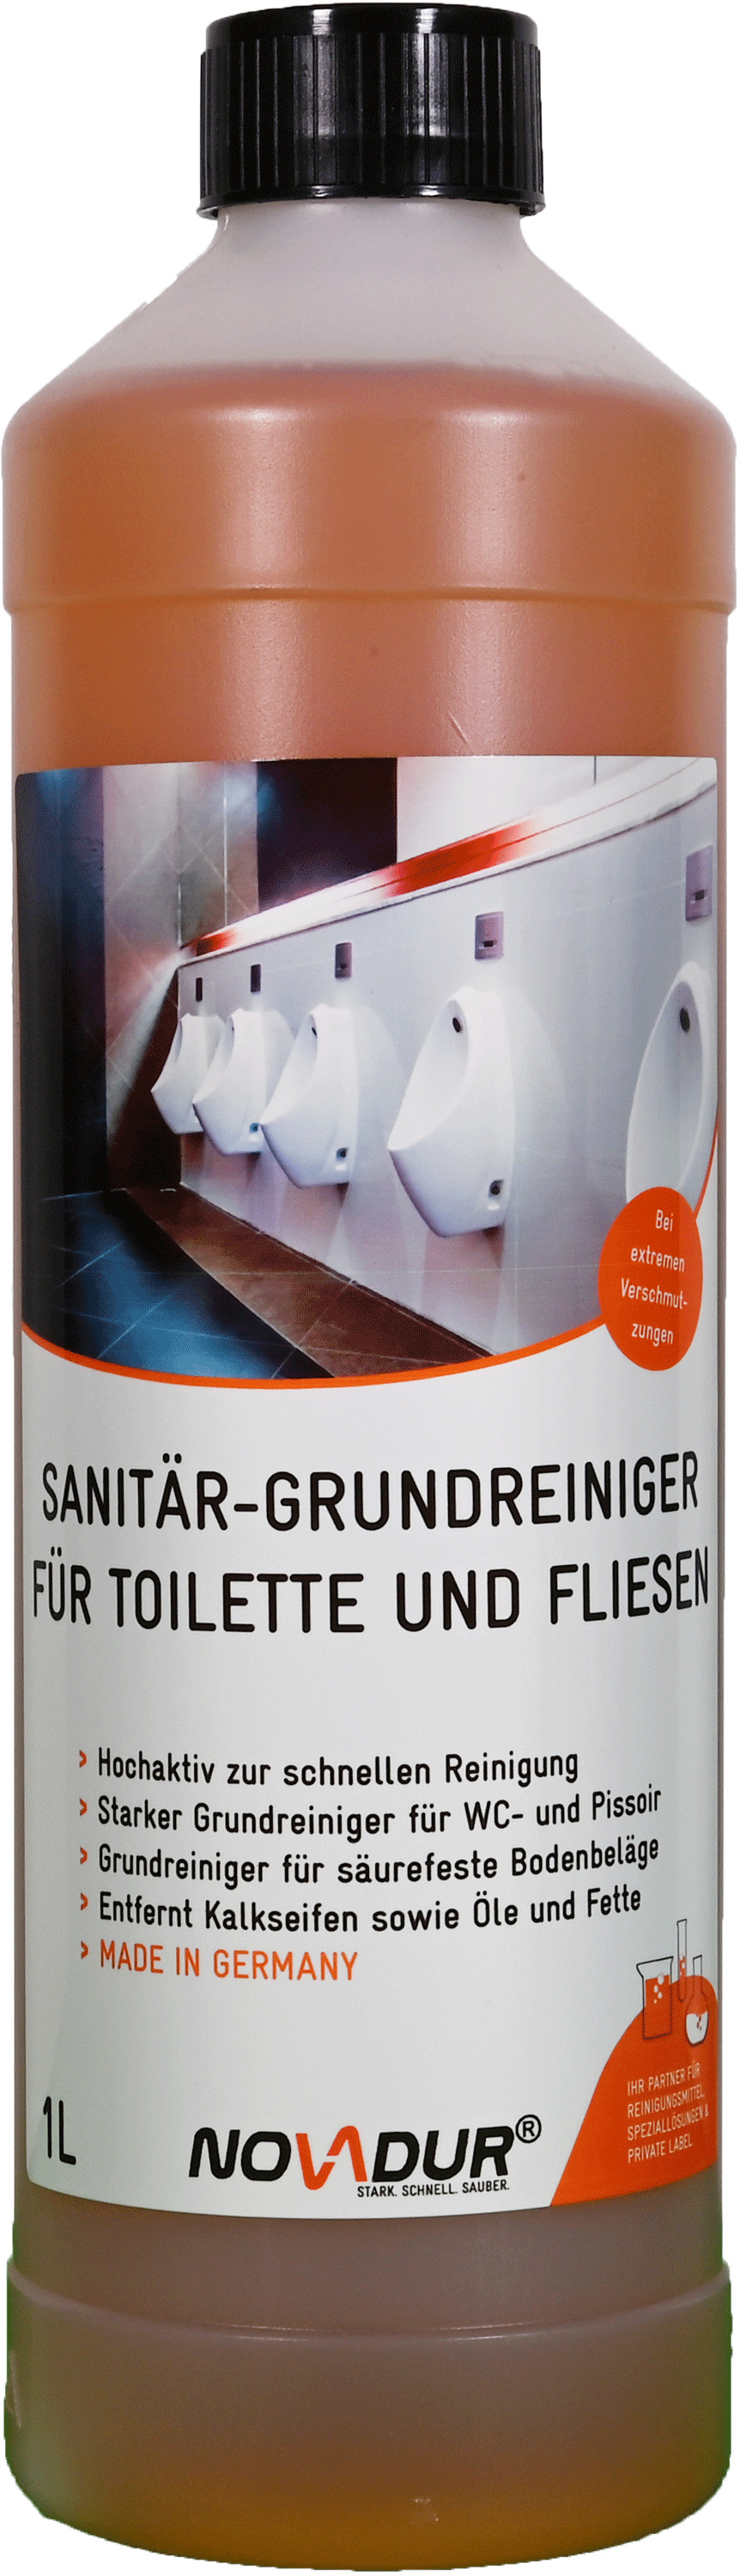 Sanitärgrundreiniger für Toilette und Fliesen